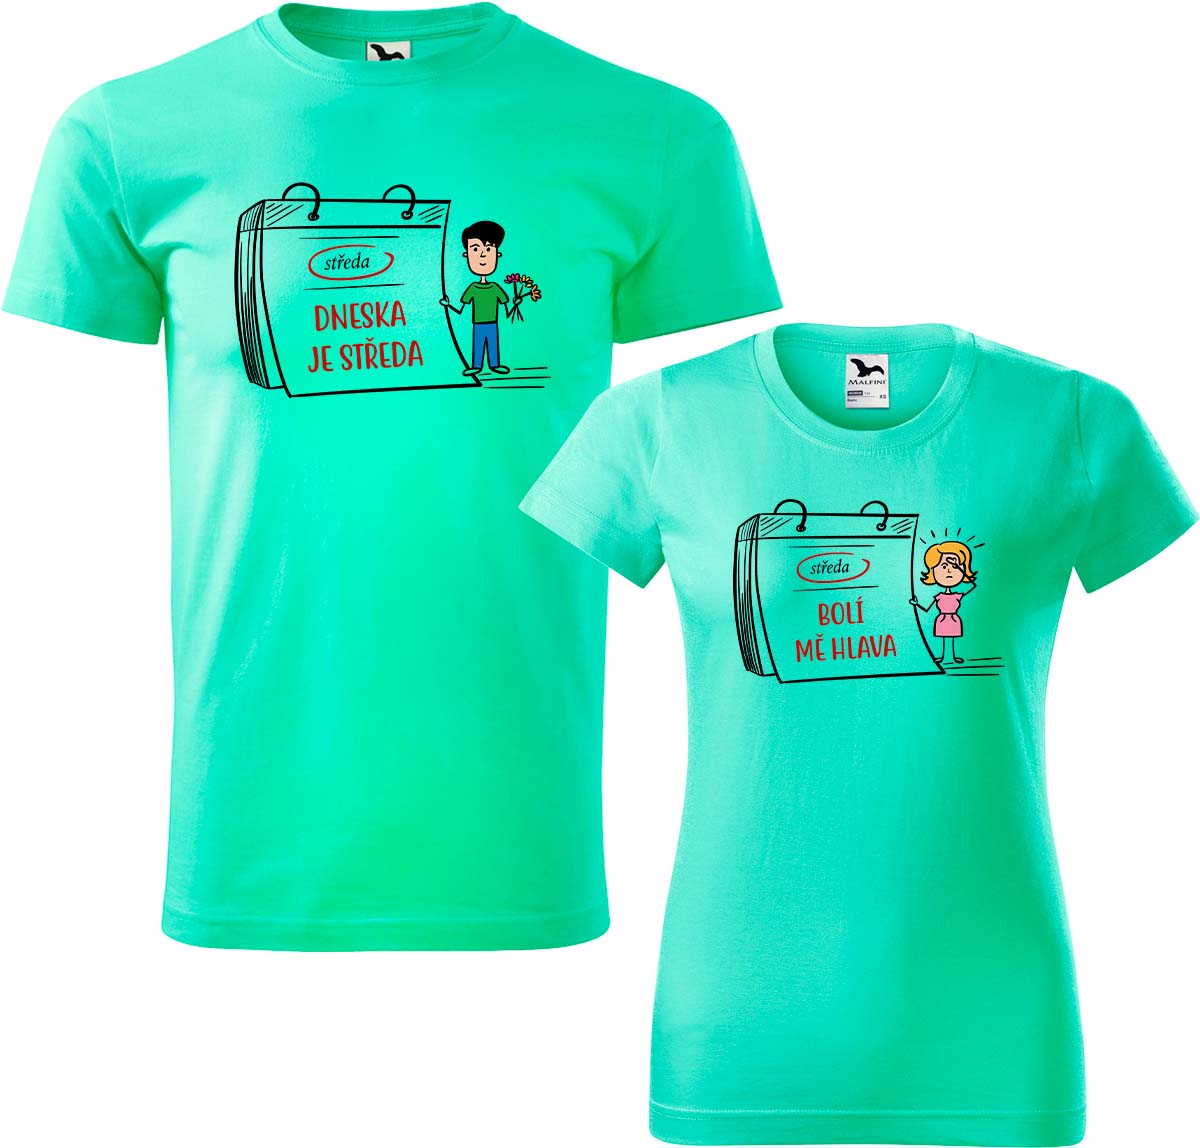 Trička pro páry - Dneska je středa Barva: Mátová (95), Velikost dámské tričko: XL, Velikost pánské tričko: M